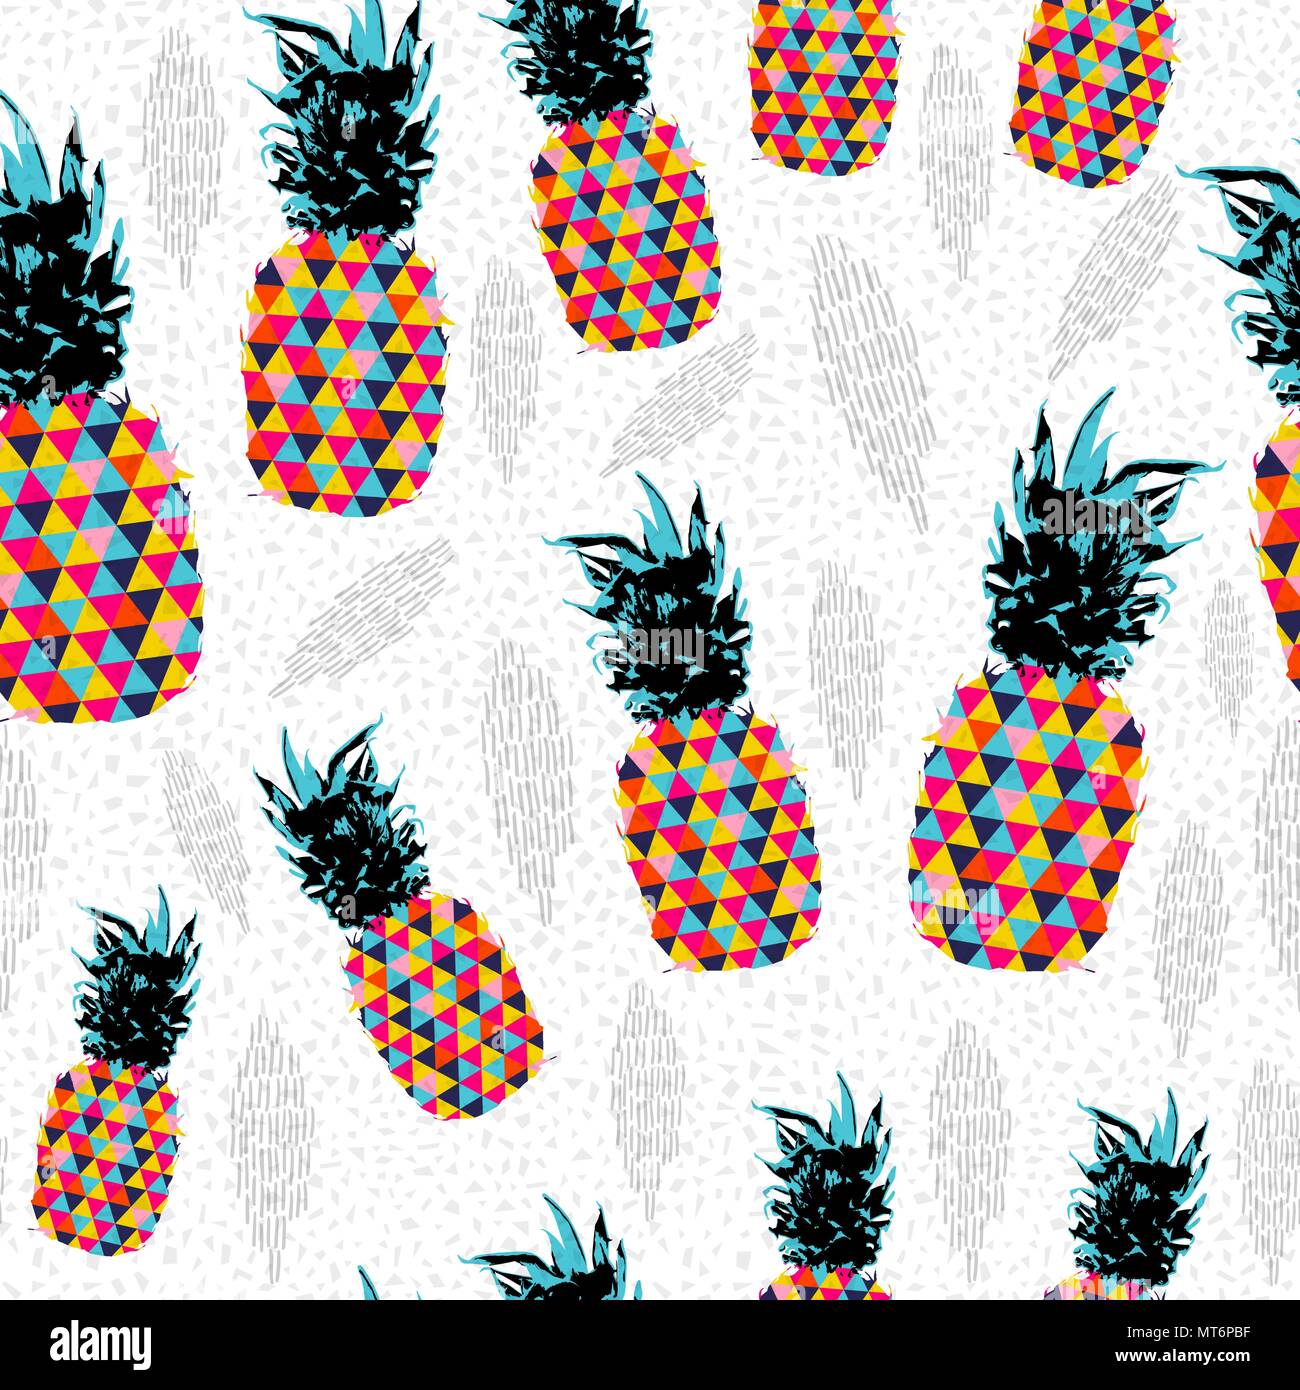 Sommer nahtlose Muster, Ananas Obst mit abstrakte farbenfrohe Kunst ideal für Spaß Mode drucken Papier oder Gewebe. EPS 10 Vektor. Stock Vektor